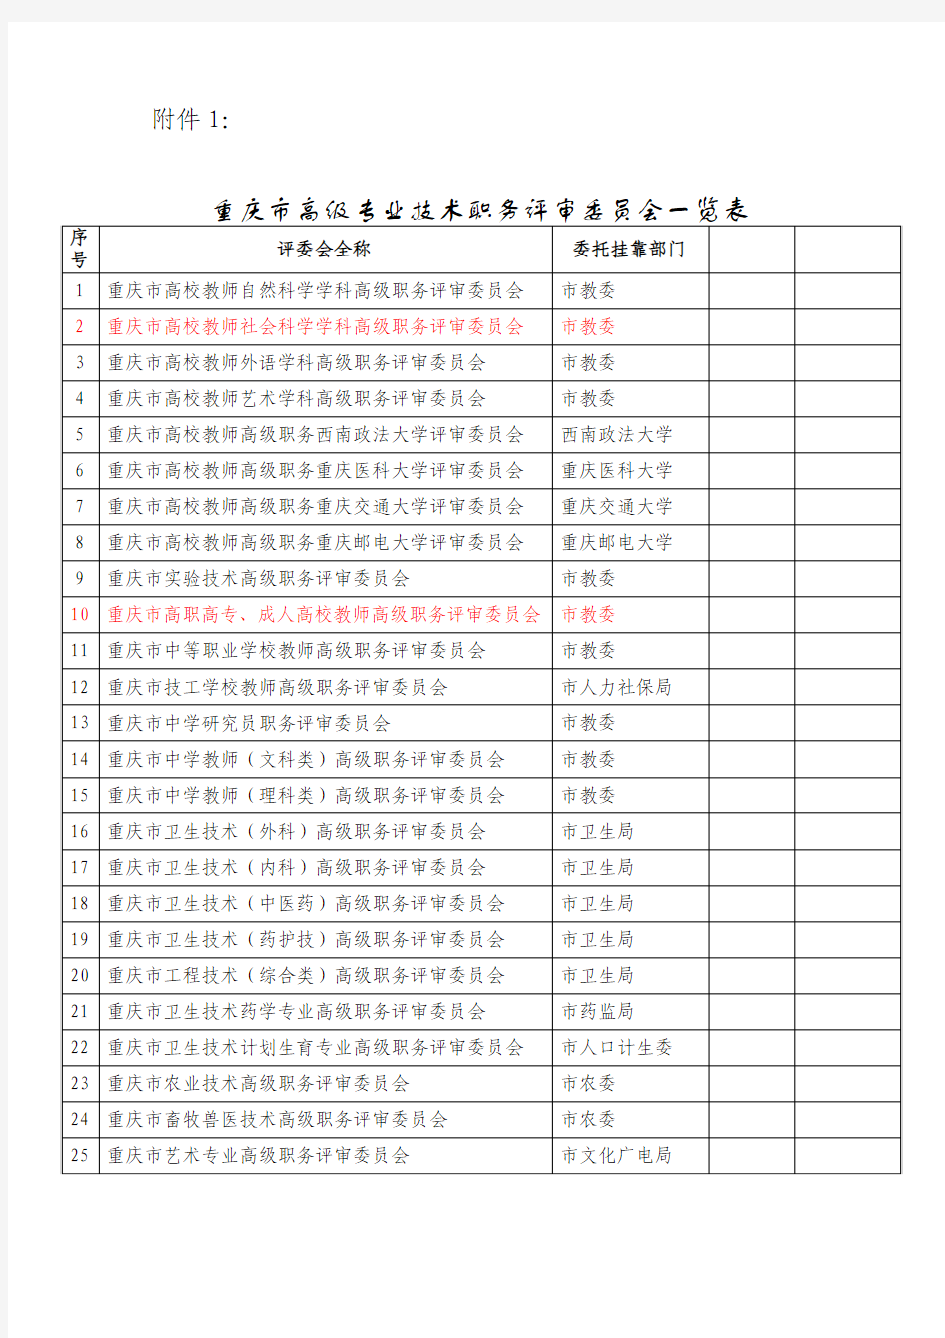 重庆市高级专业技术职务评审委员会一览表